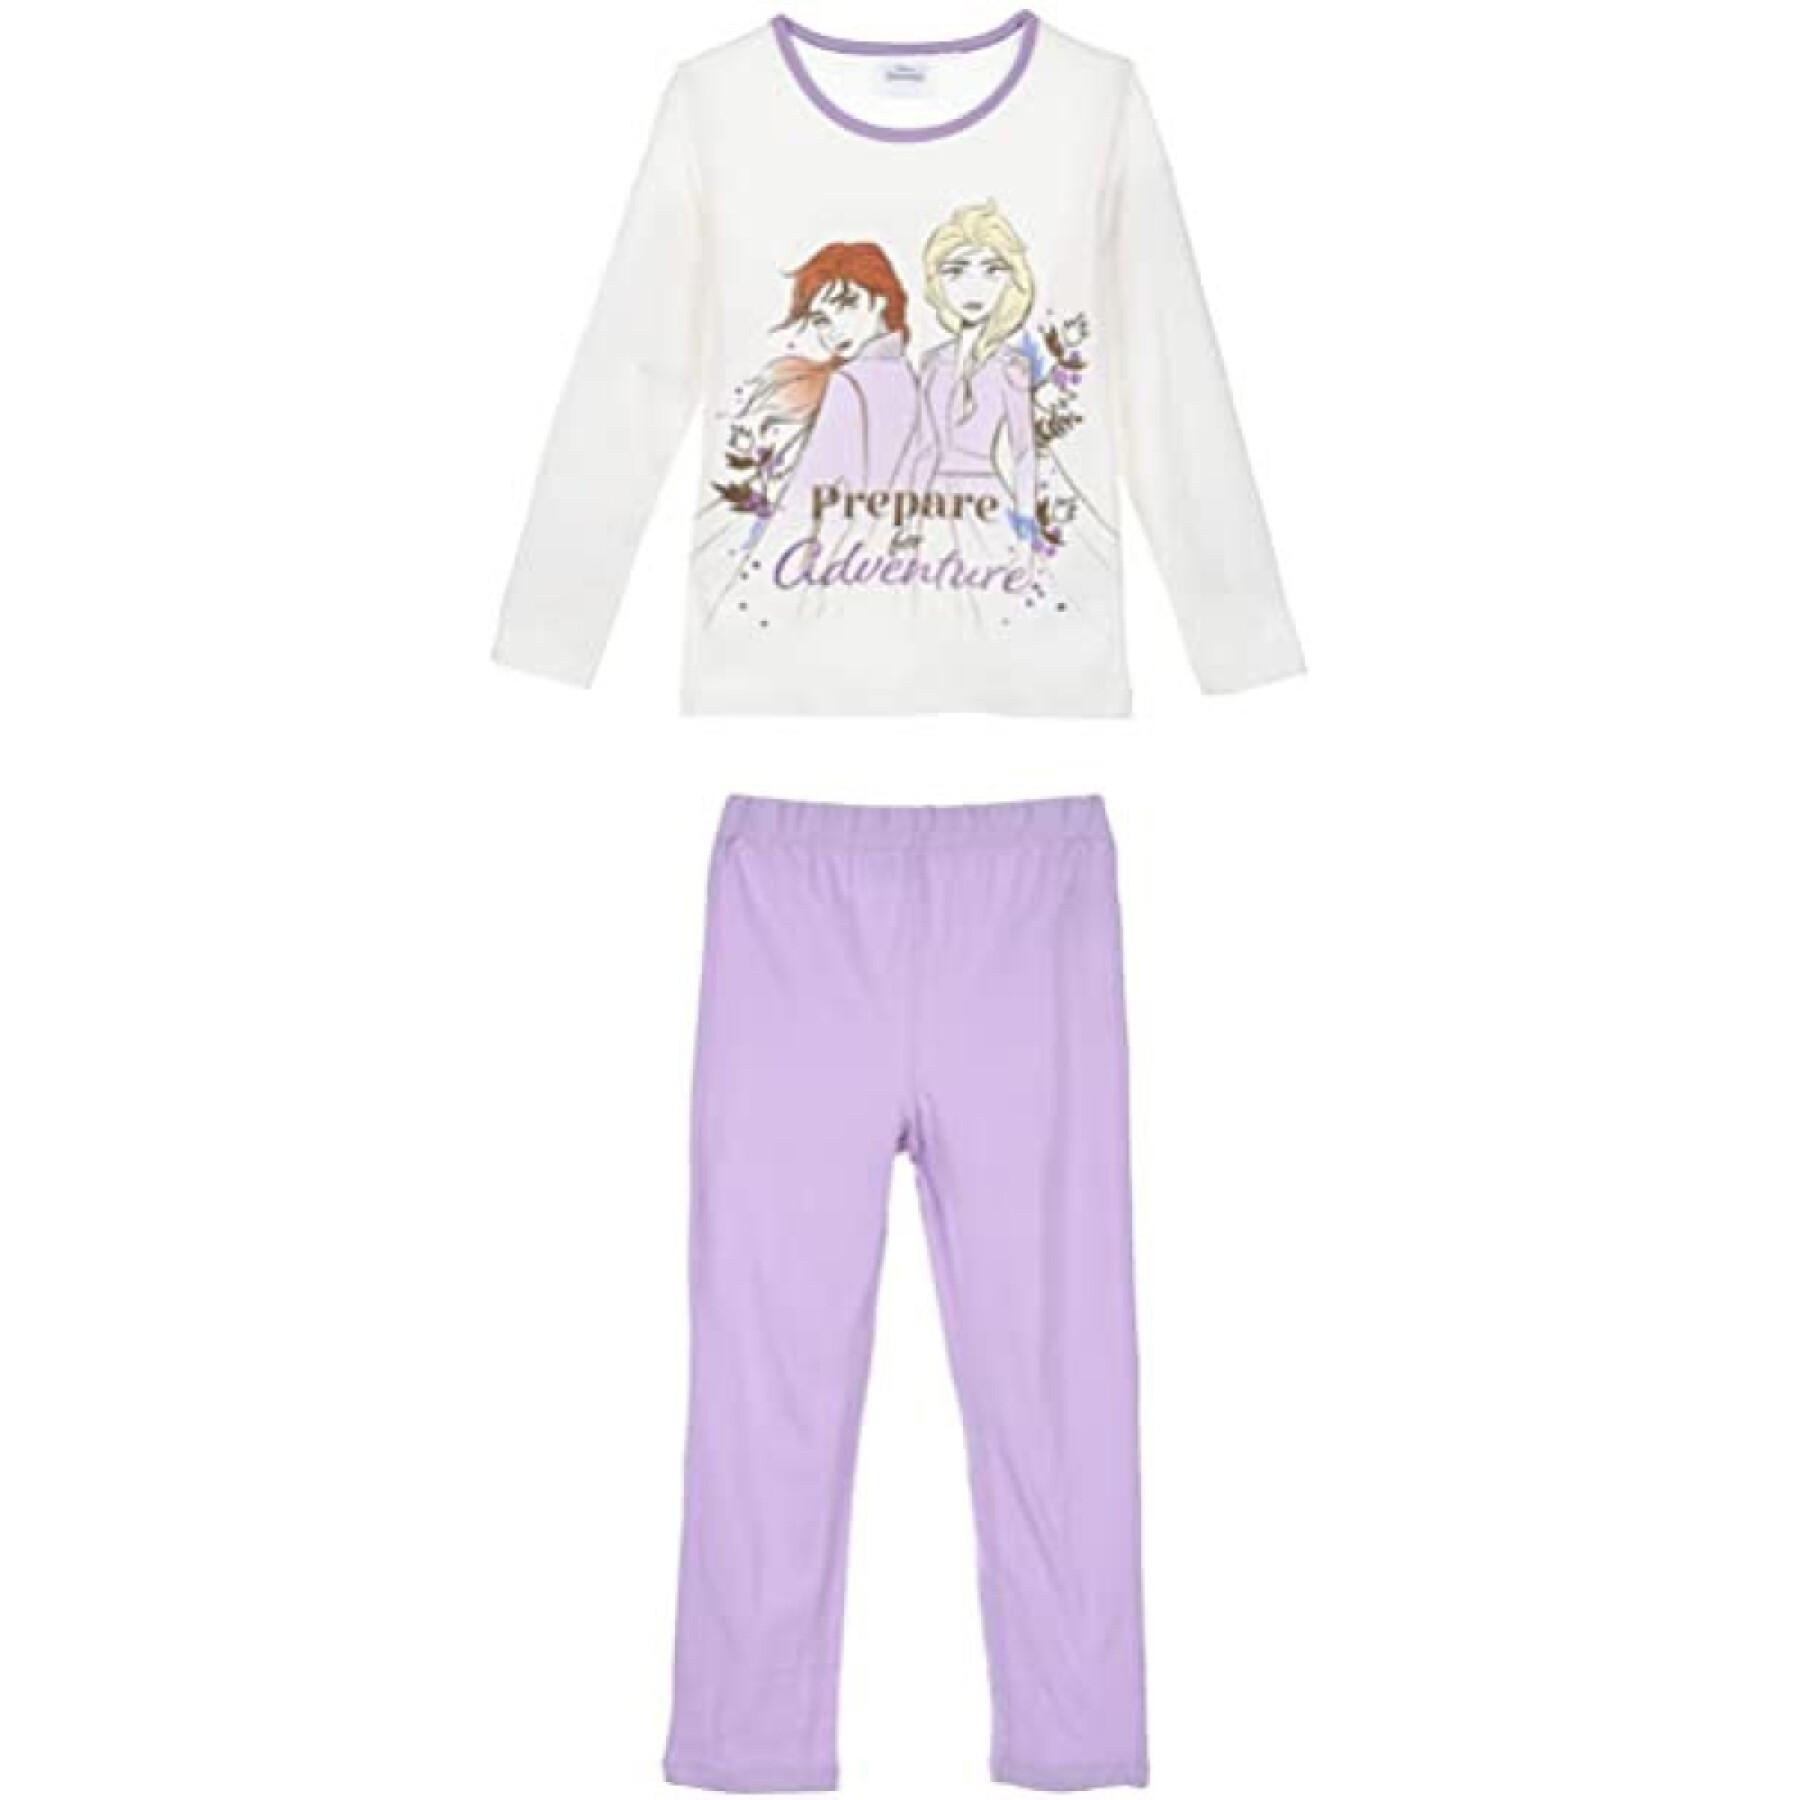 Pyjamas i bomull 4 storlekar 2 modeller för barn Disney